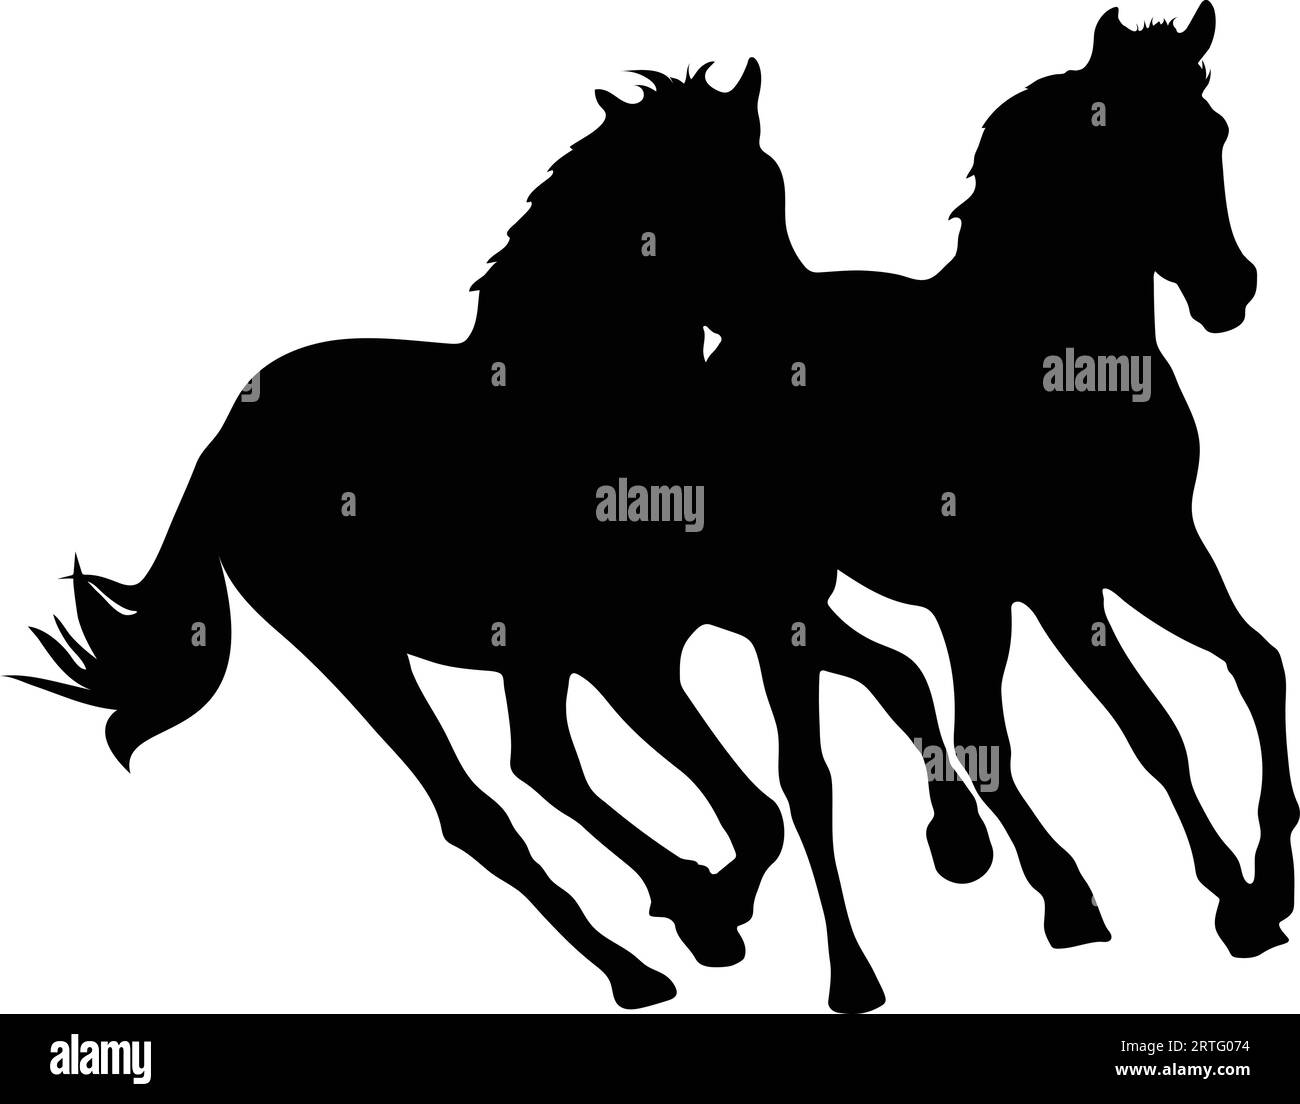 Zwei Pferde laufen zusammen Silhouette oder Vektor Stock Vektor